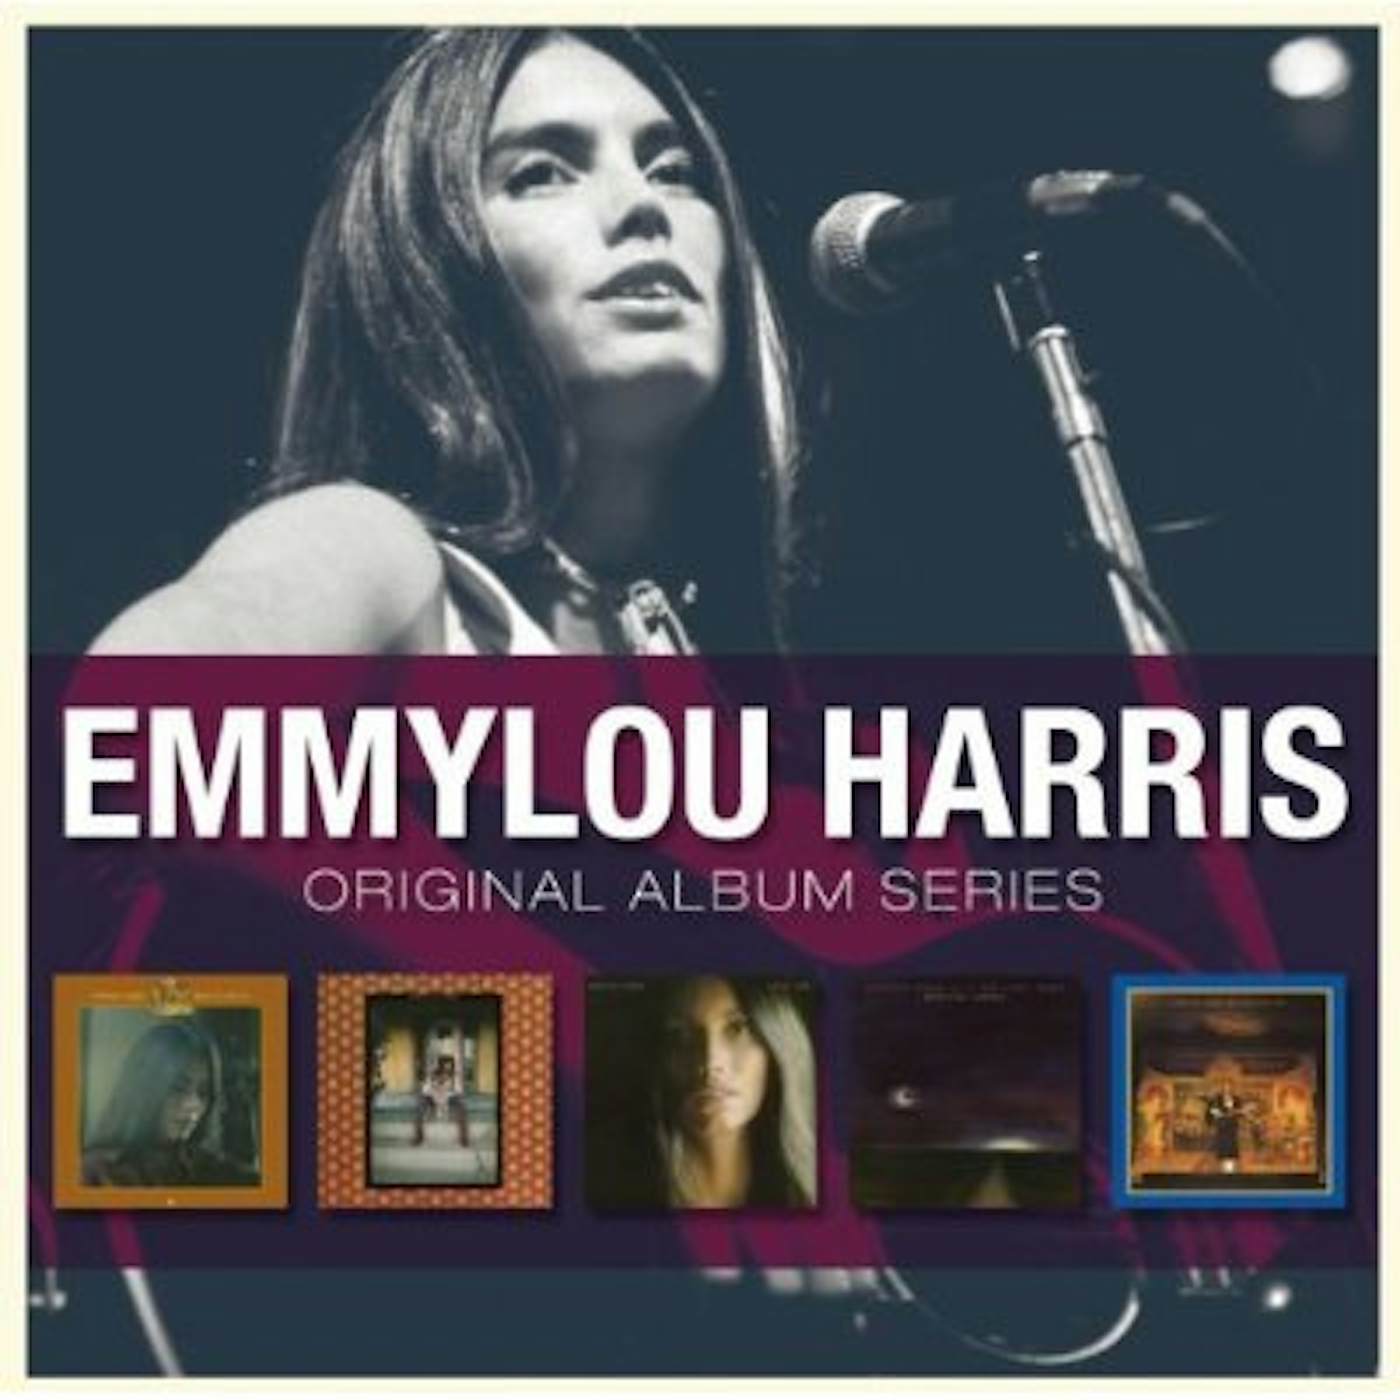 Emmylou Harris ORIGINAL ALBUM SERIES CD